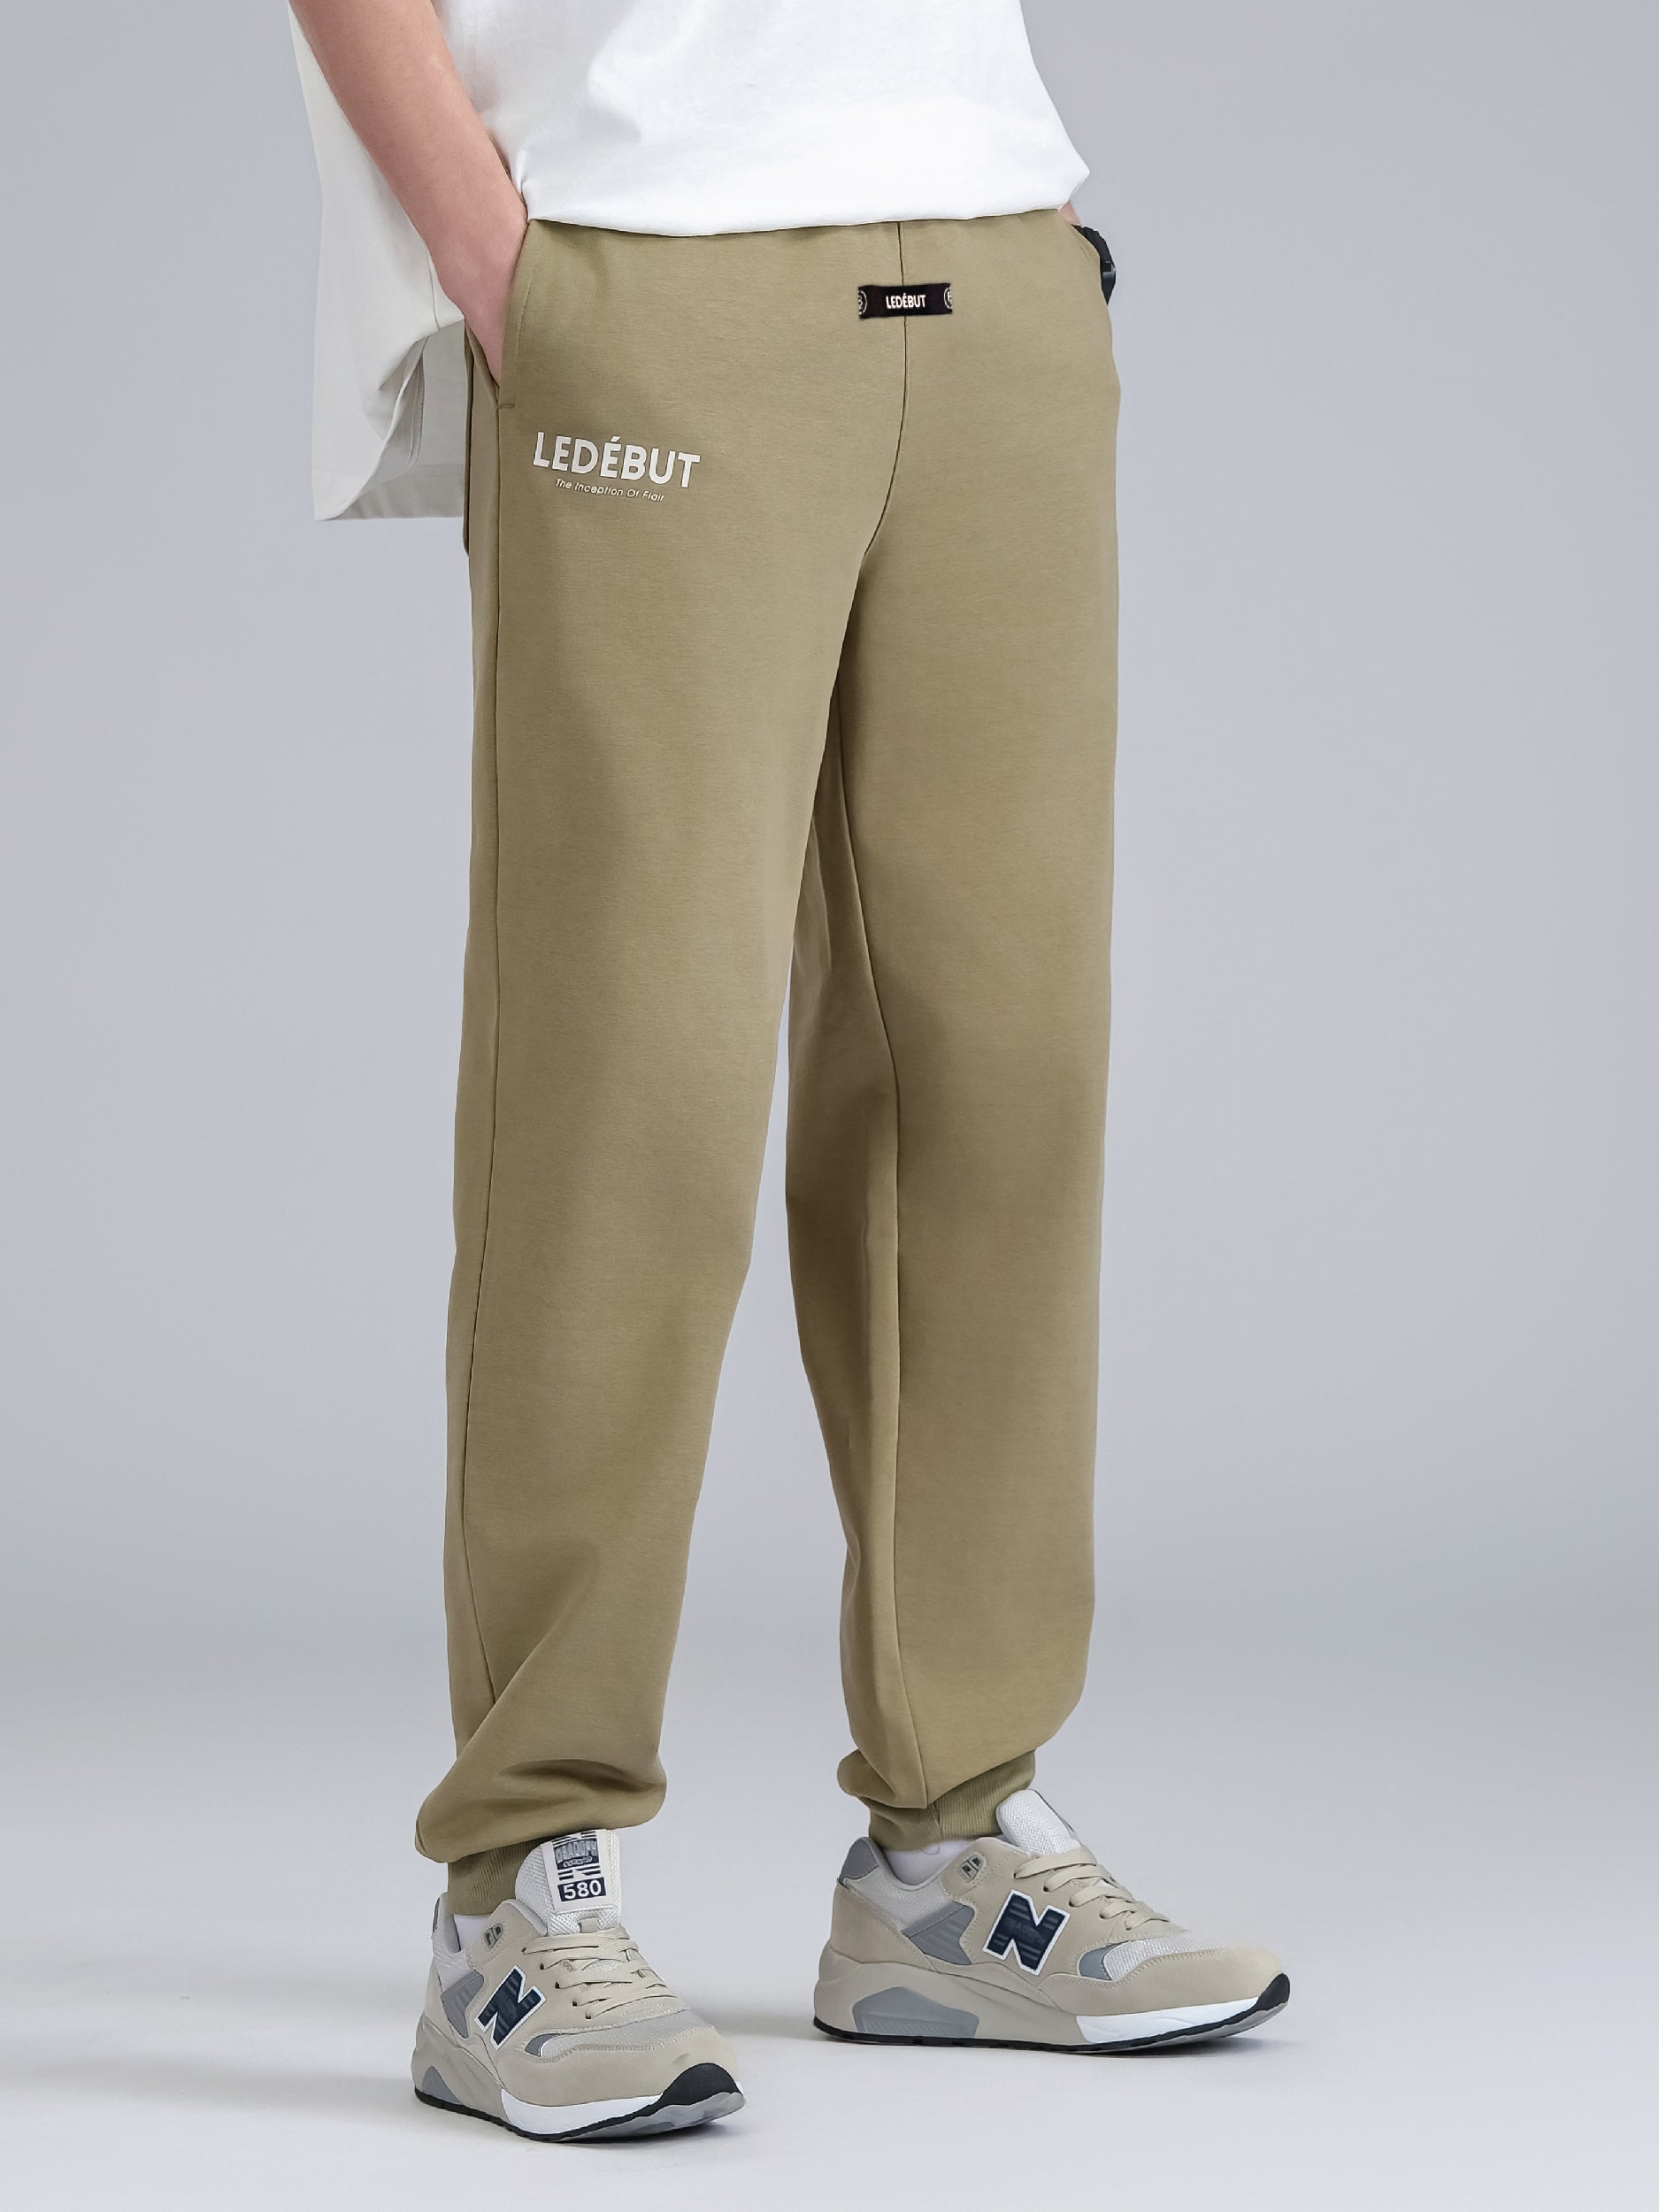 Men's Cotton Linen Blend Long Pants Loose Elastic Waist - Temu